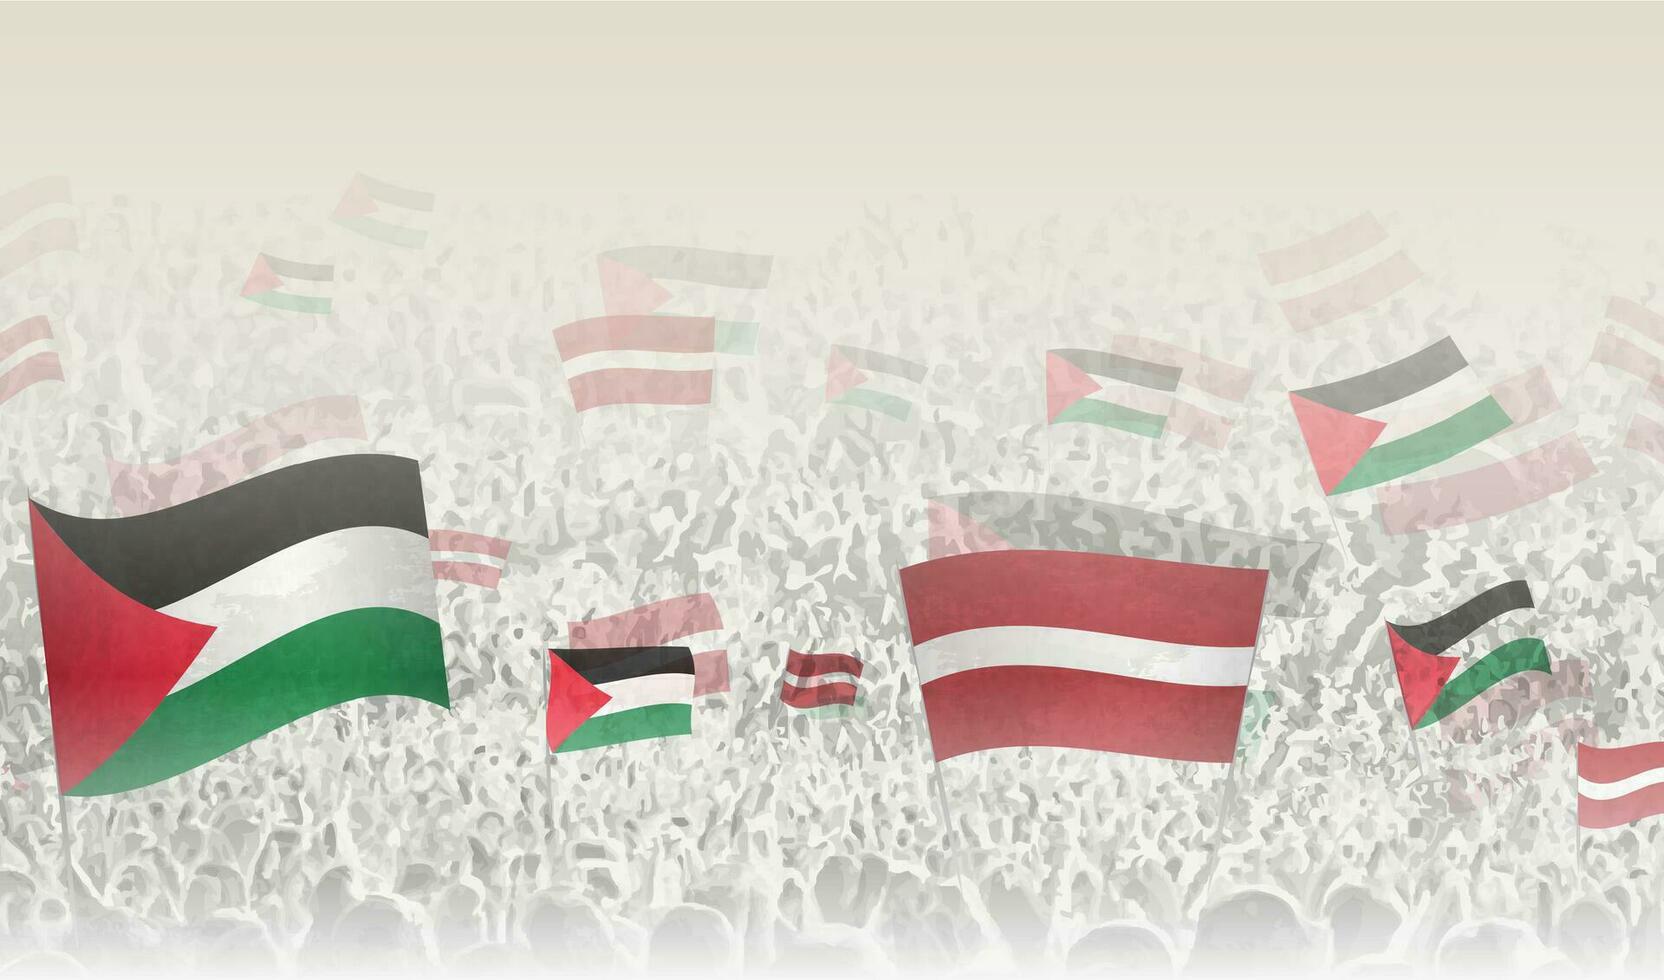 Palästina und Lettland Flaggen im ein Menge von Jubel Personen. vektor